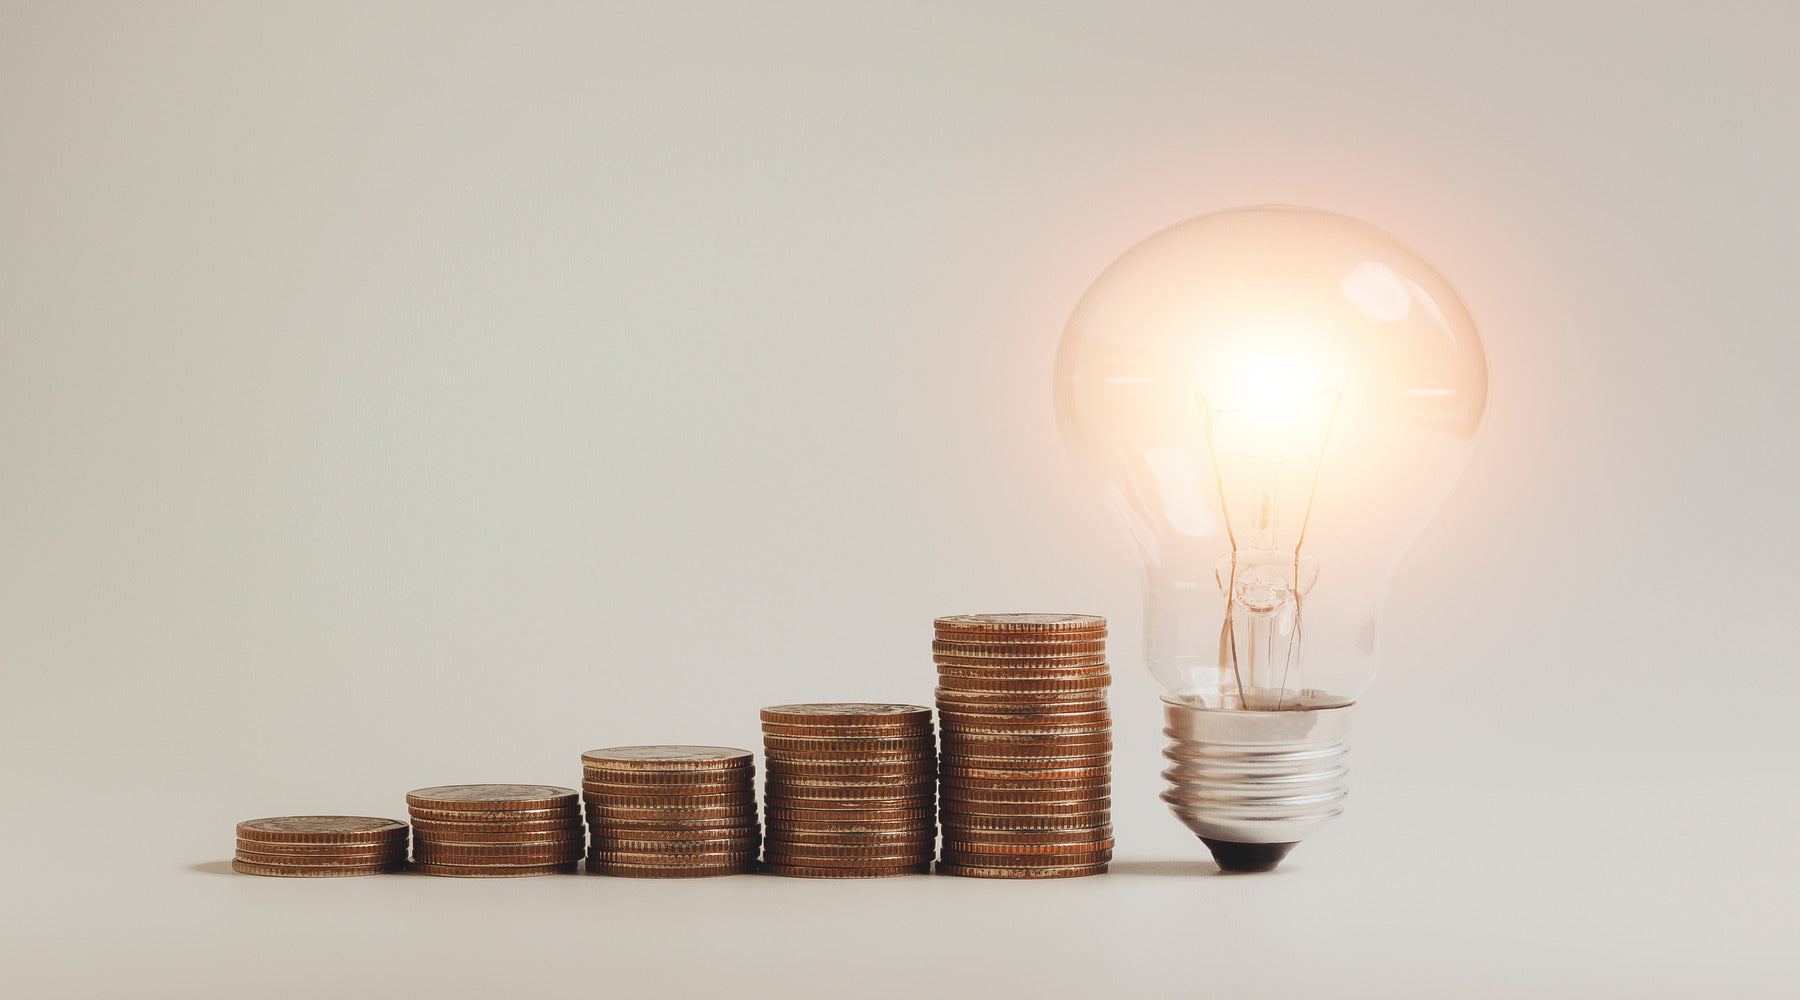 LED light bulb shown beside stacks of money coins